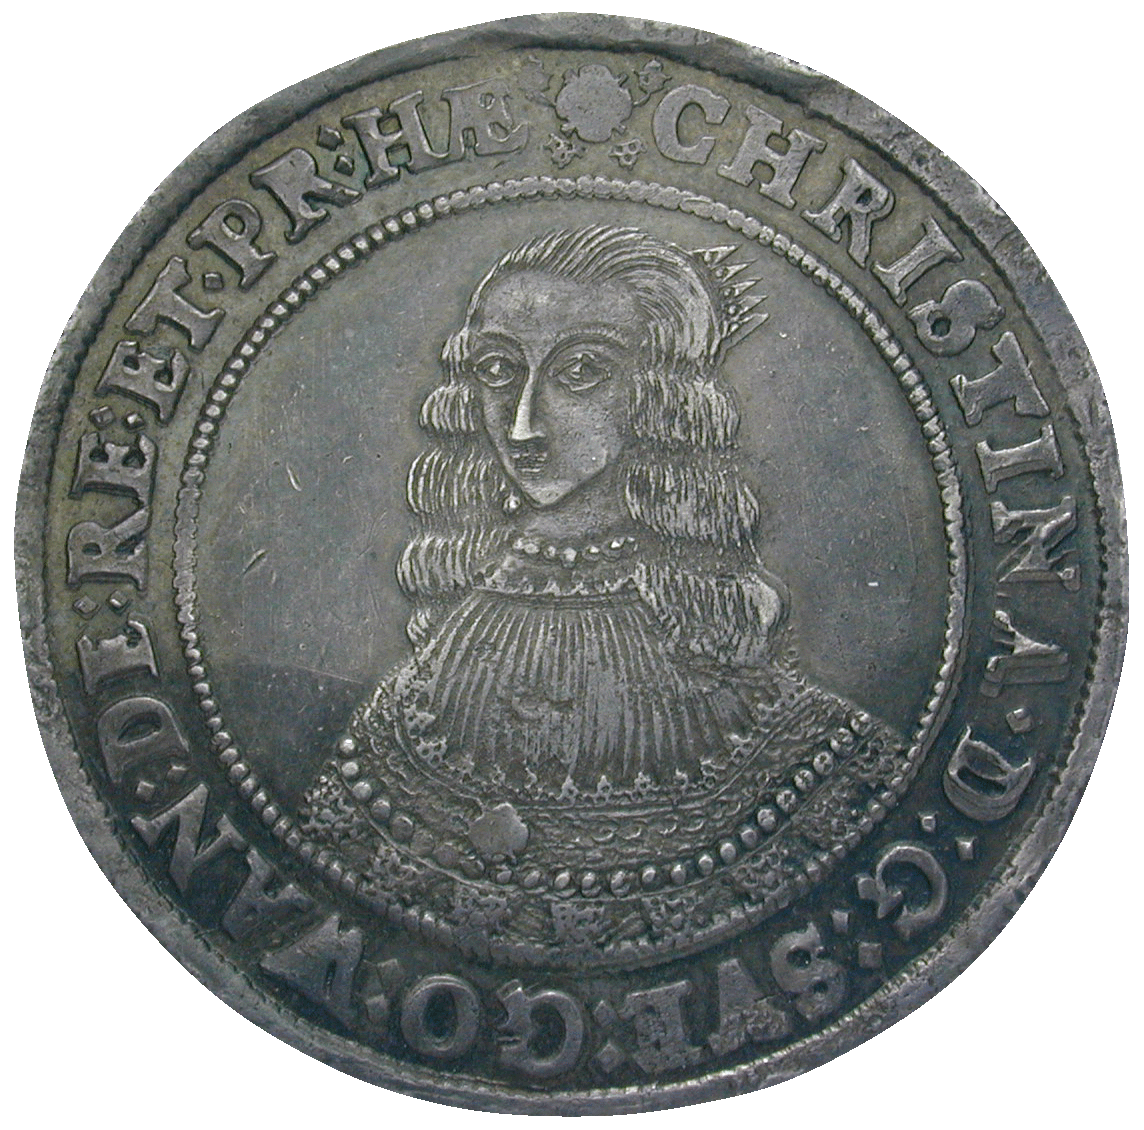 Kingdom of Sweden, Christina, Riksdaler 1644, Stockholm or Sala (obverse)